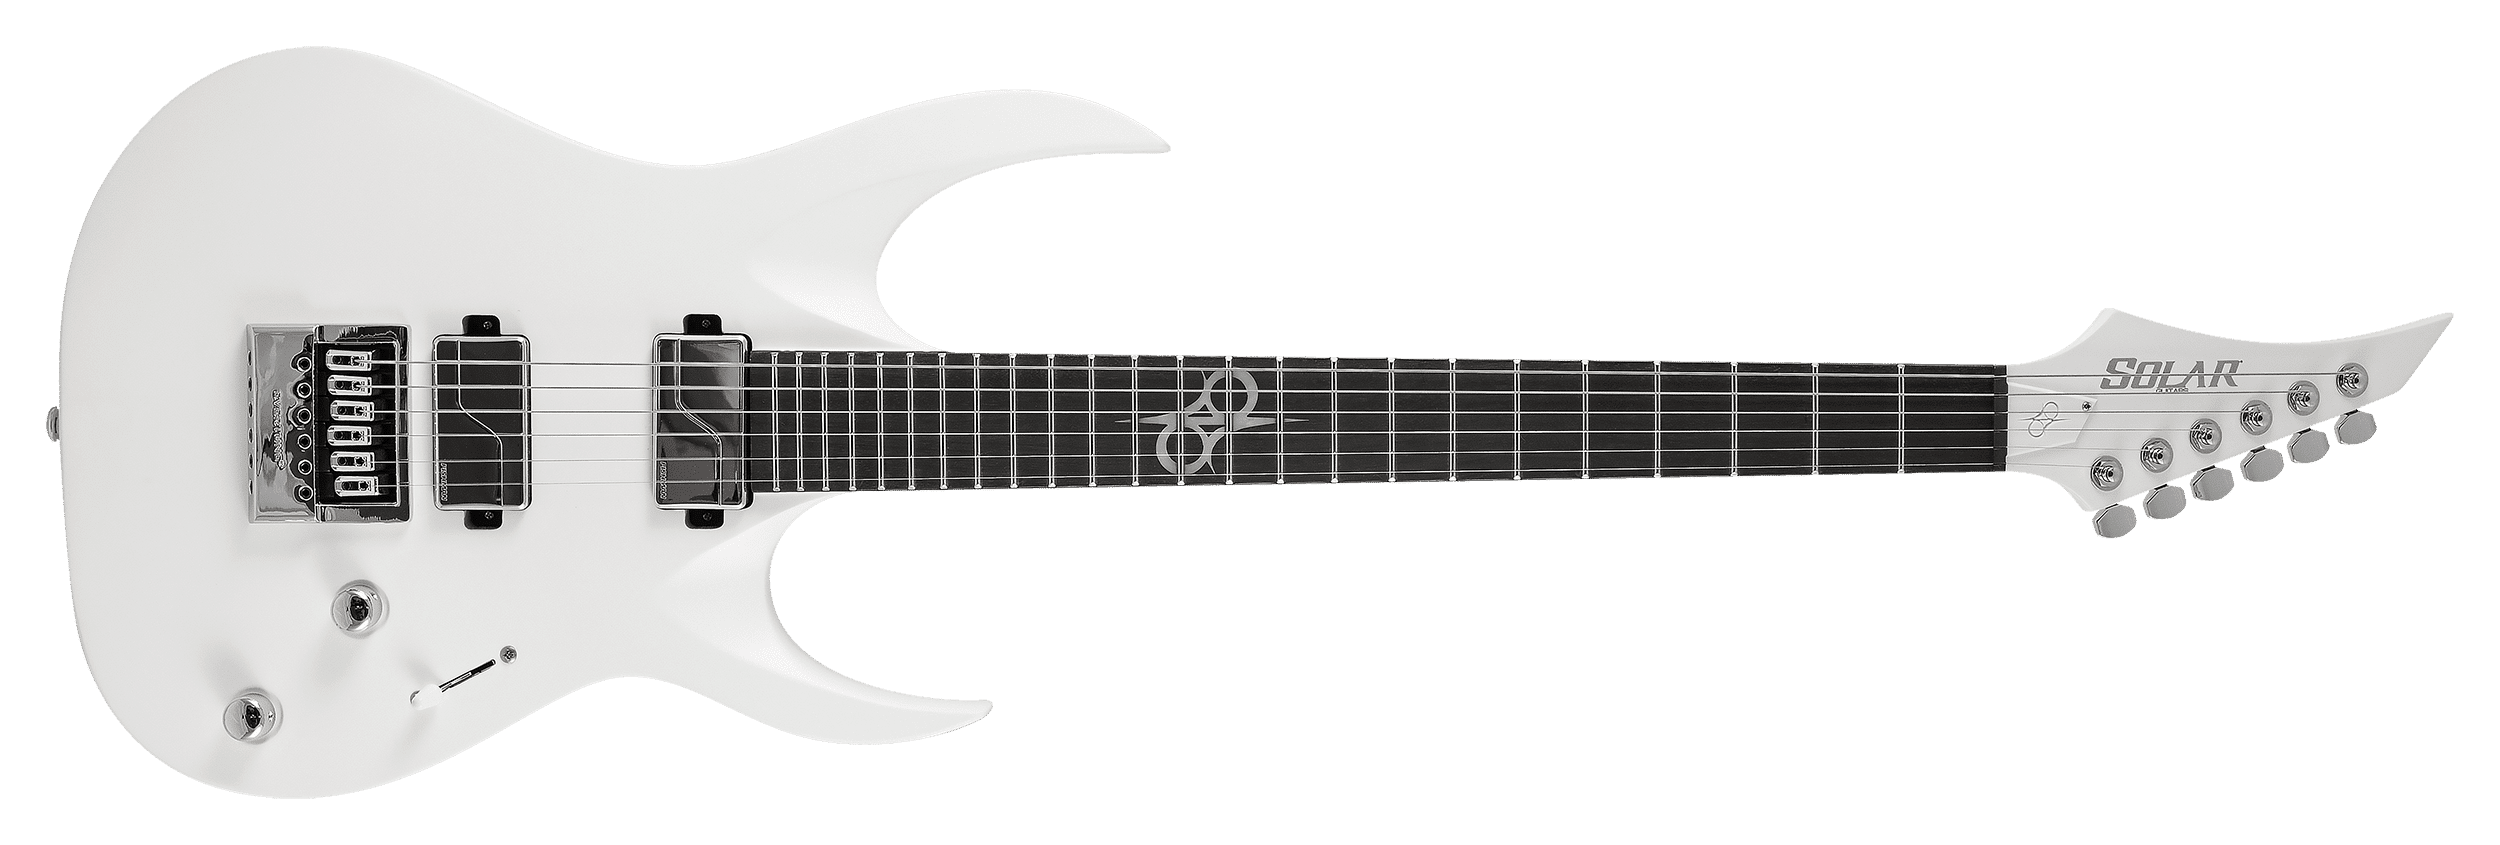 Solar Guitars' A1.6 Vinter